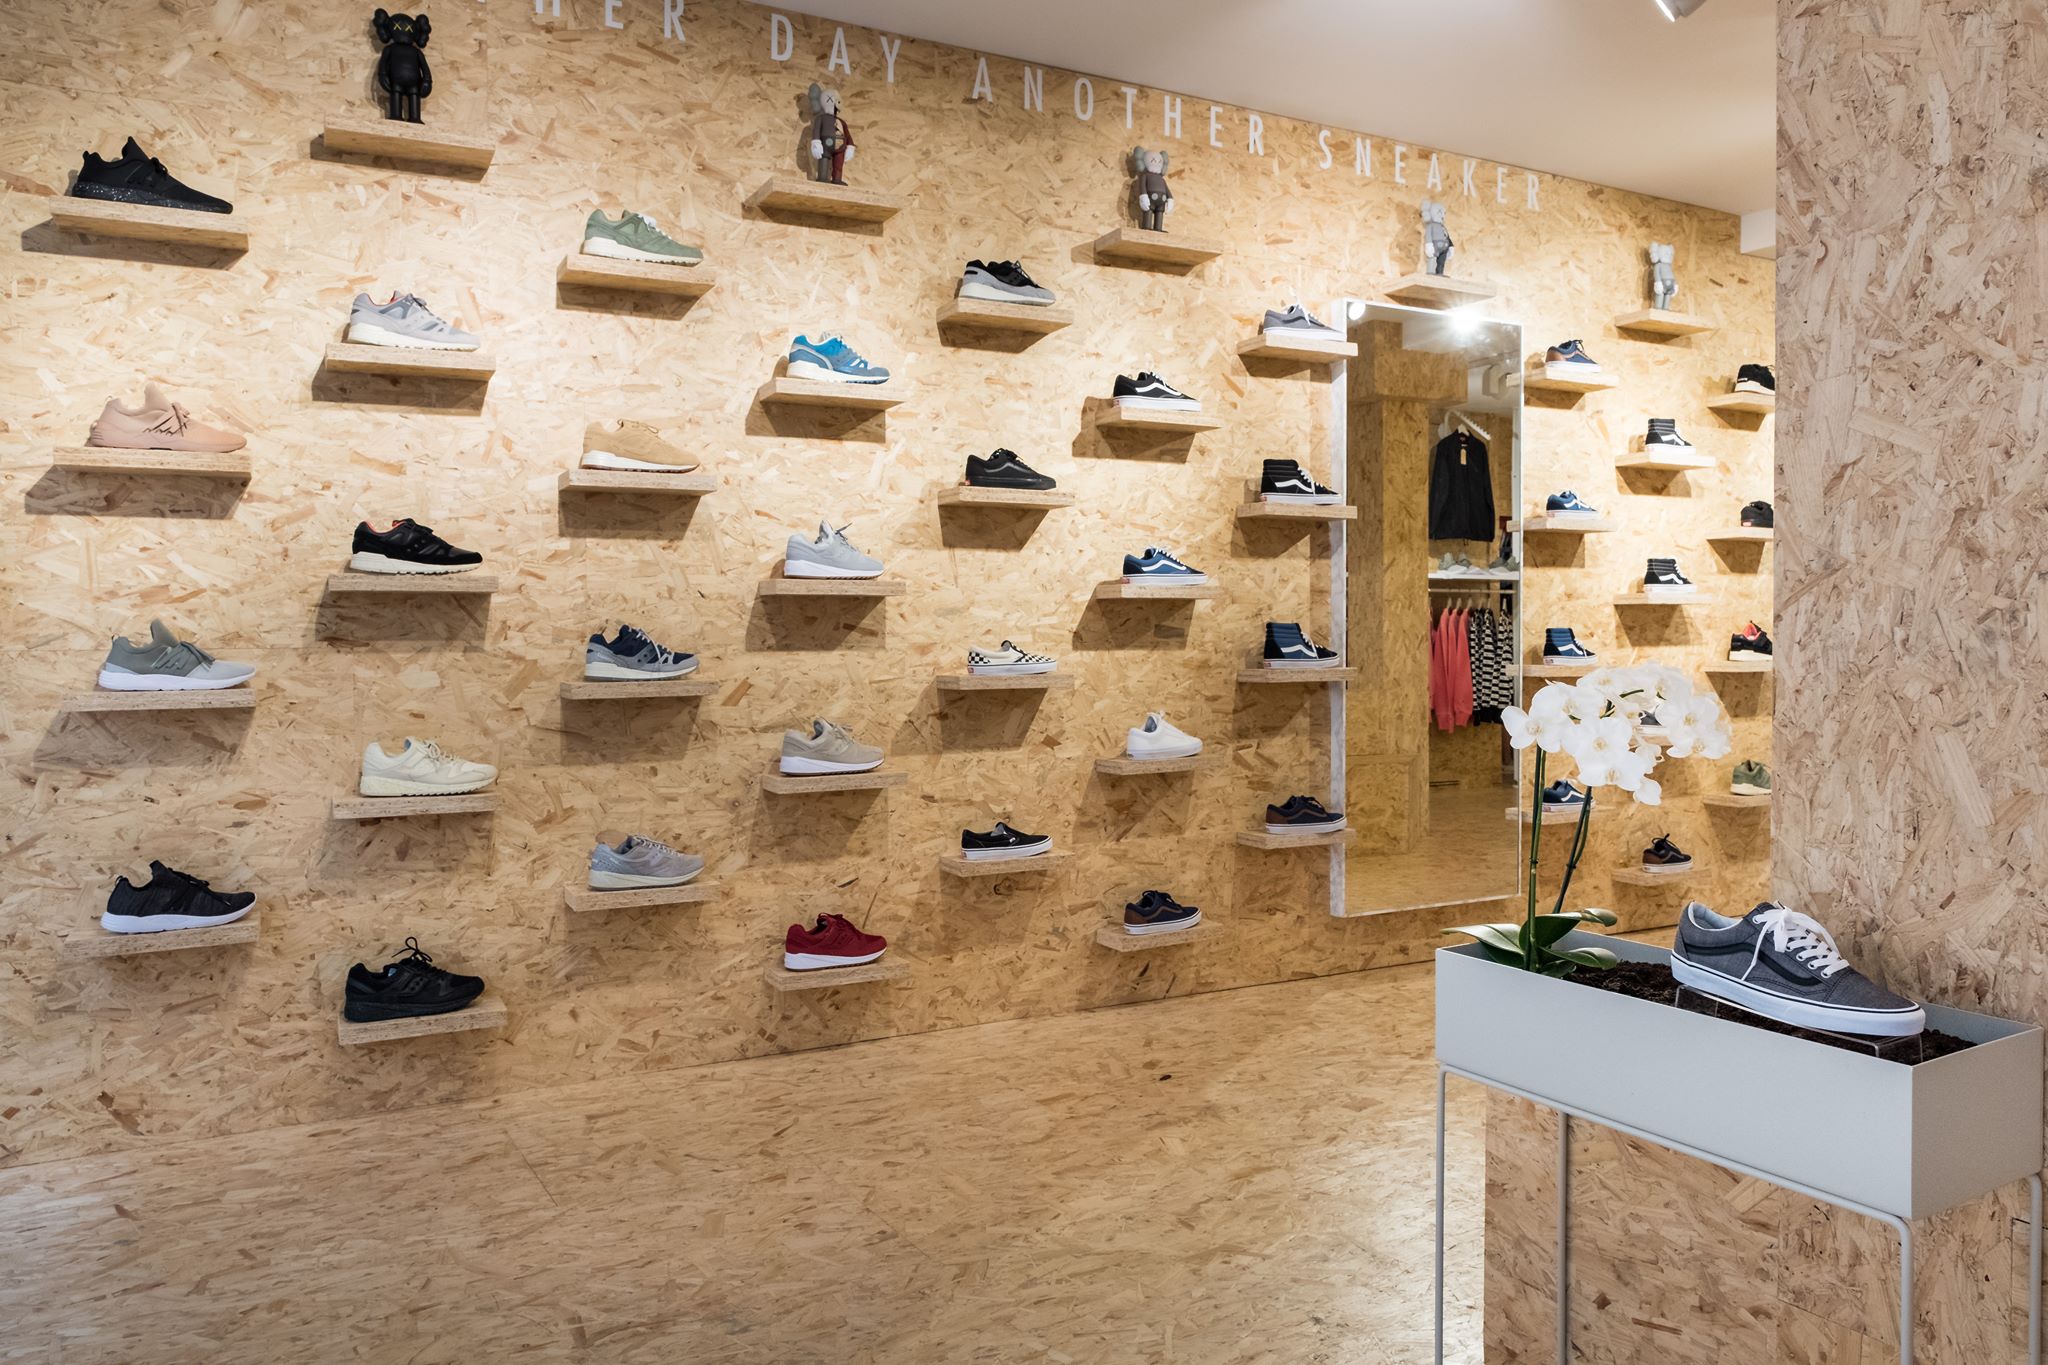 Deaup en meer winkels in Deventer vind je bij Shoppen in Deventer